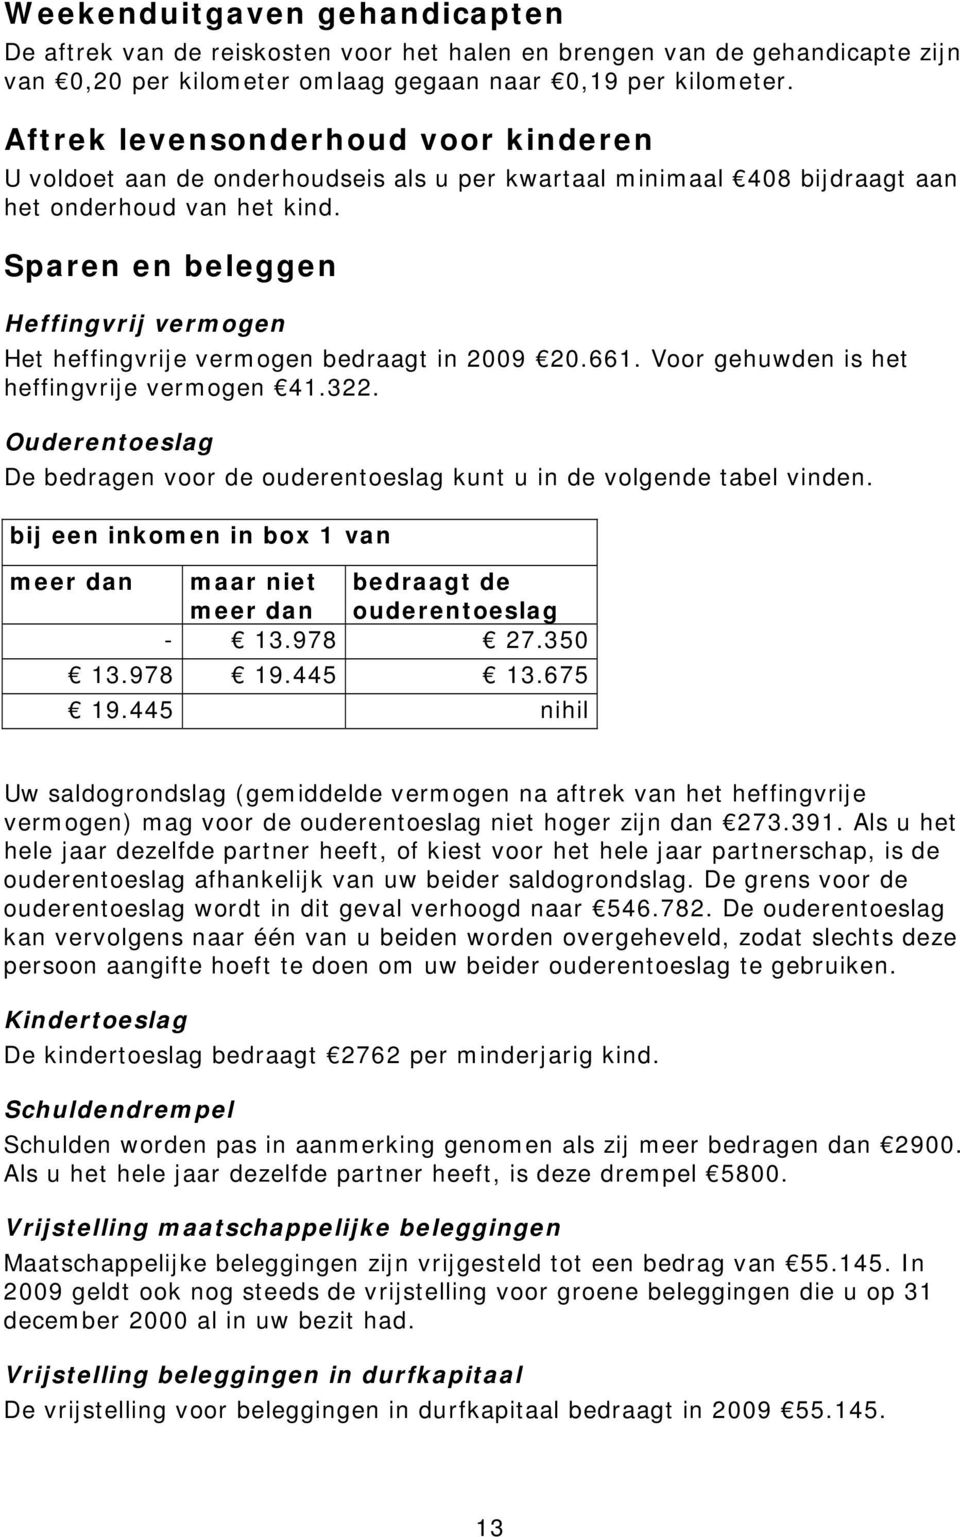 Sparen en beleggen Heffingvrij vermogen Het heffingvrije vermogen bedraagt in 2009 20.661. Voor gehuwden is het heffingvrije vermogen 41.322.